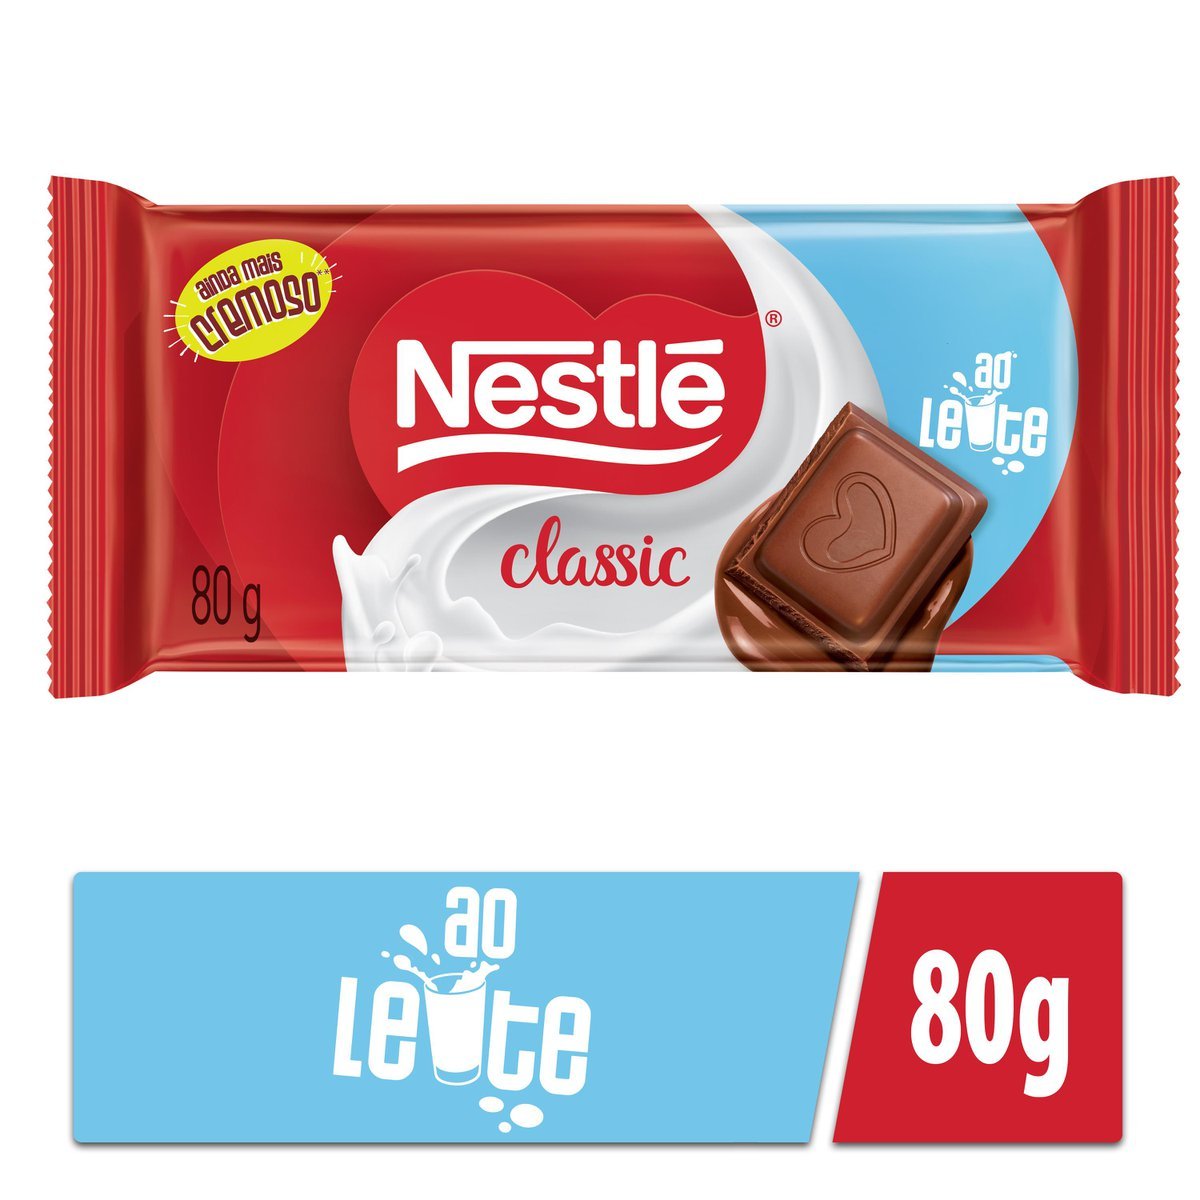 Barra de Chocolate Laka Oreo 165g  Compre na Mercadoce - Mercadoce -  Doces, Confeitaria e Embalagem